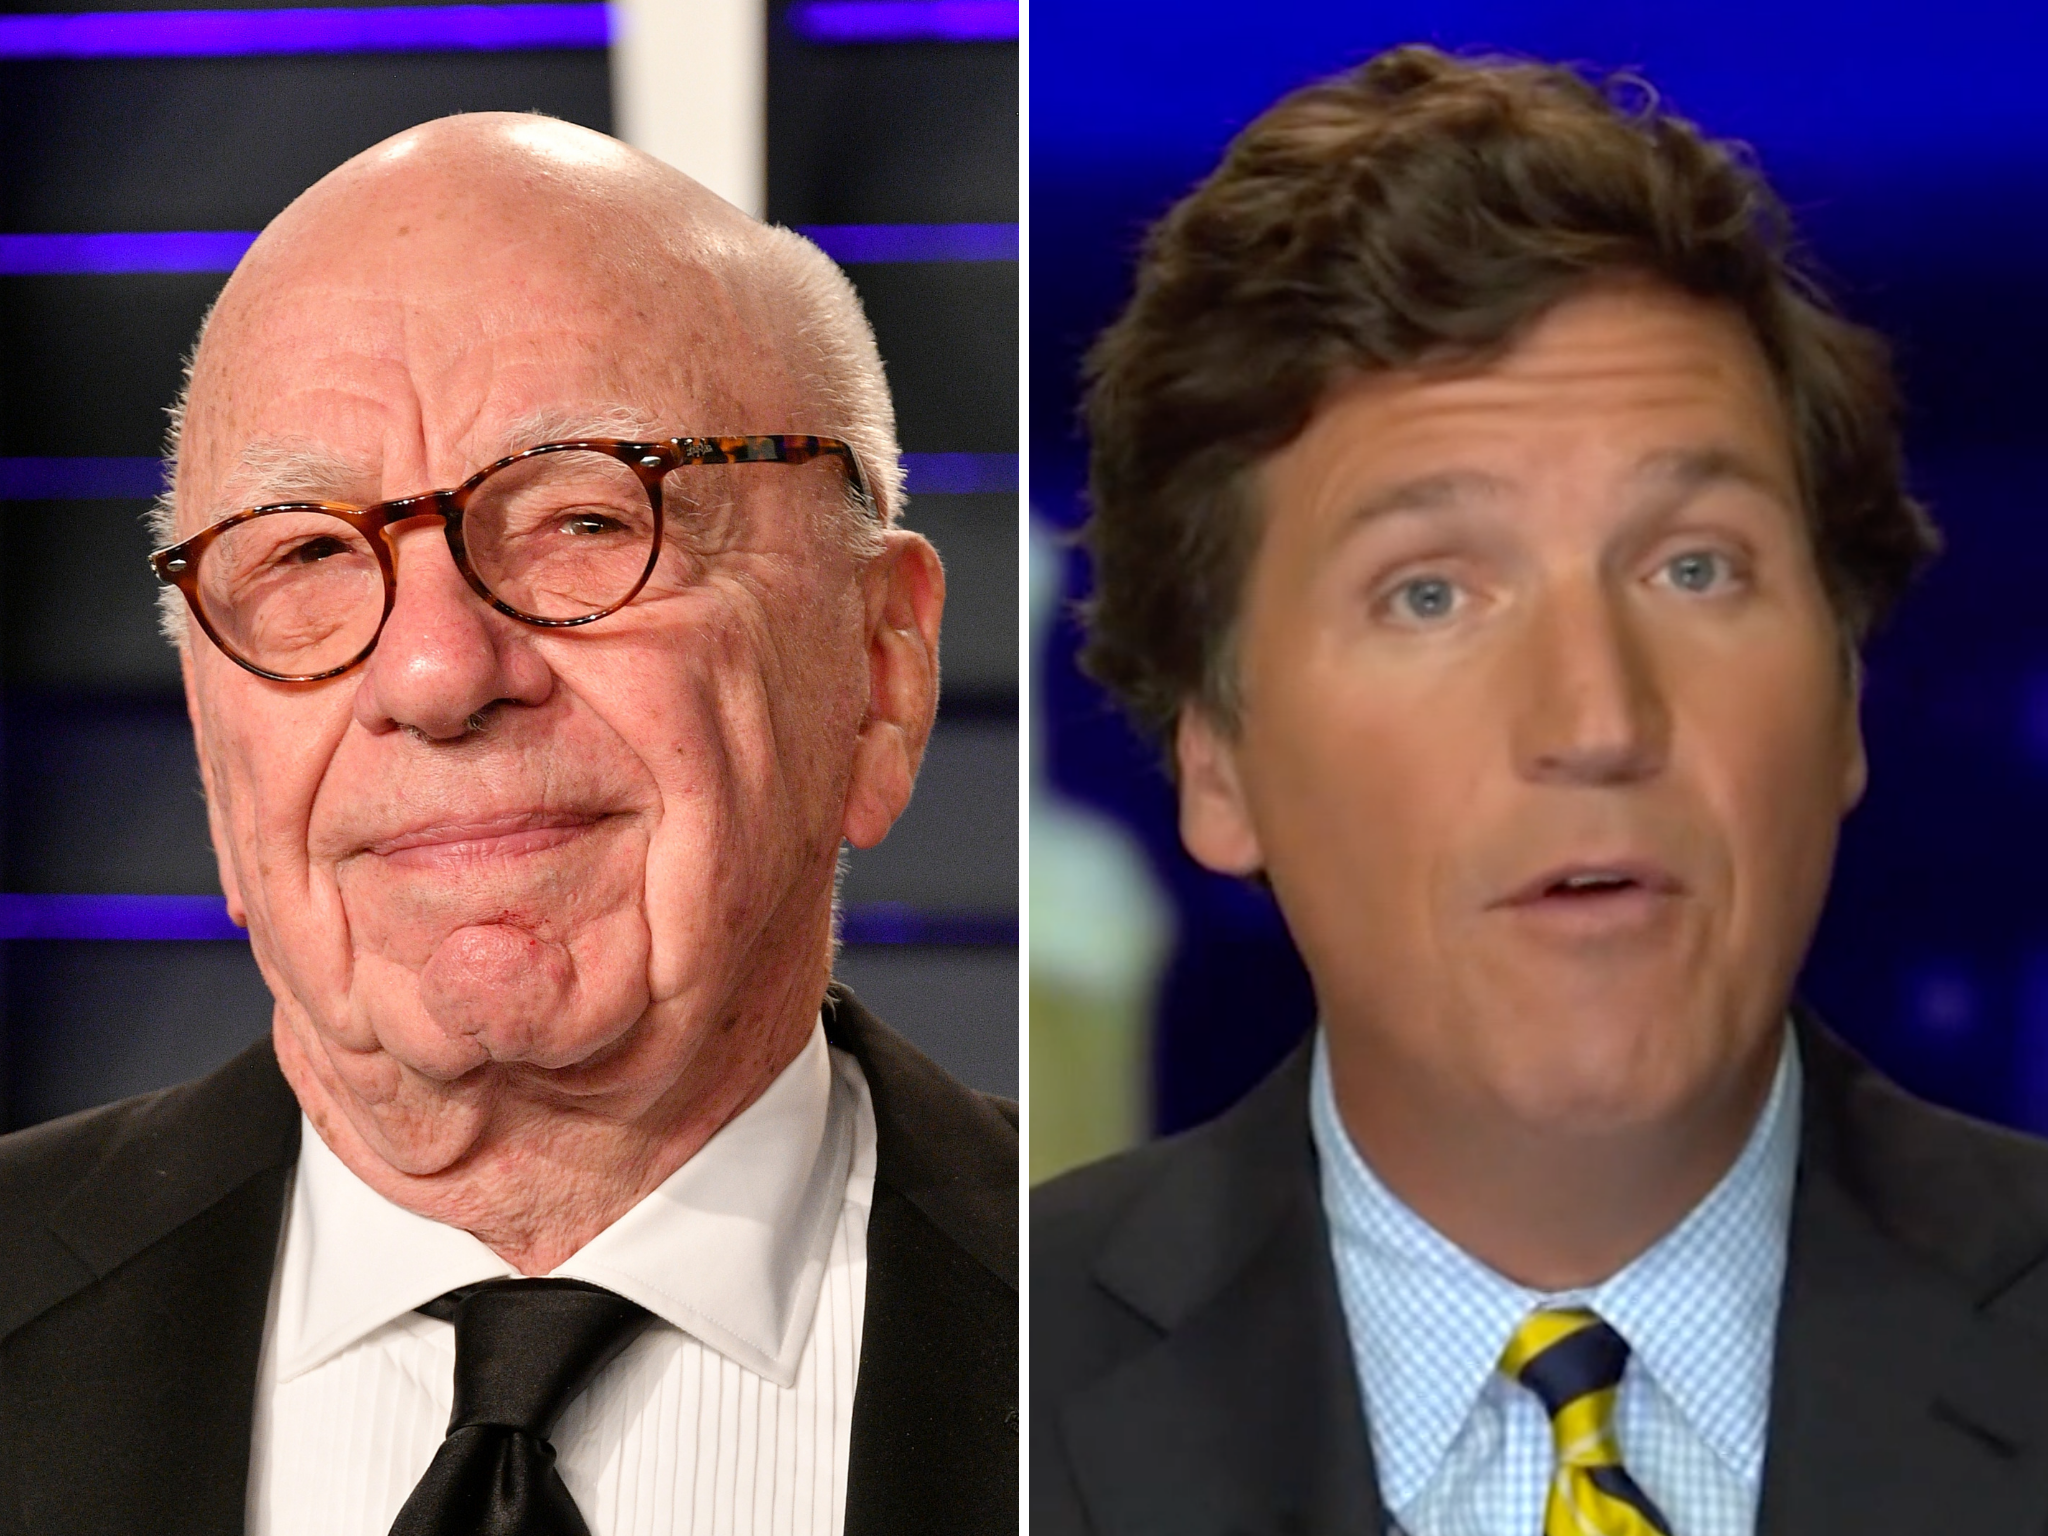 Rupert Murdoch recibió su golpe cuando Tucker Carlson (R) emitió críticas sobre su lanzamiento en los EE. UU.